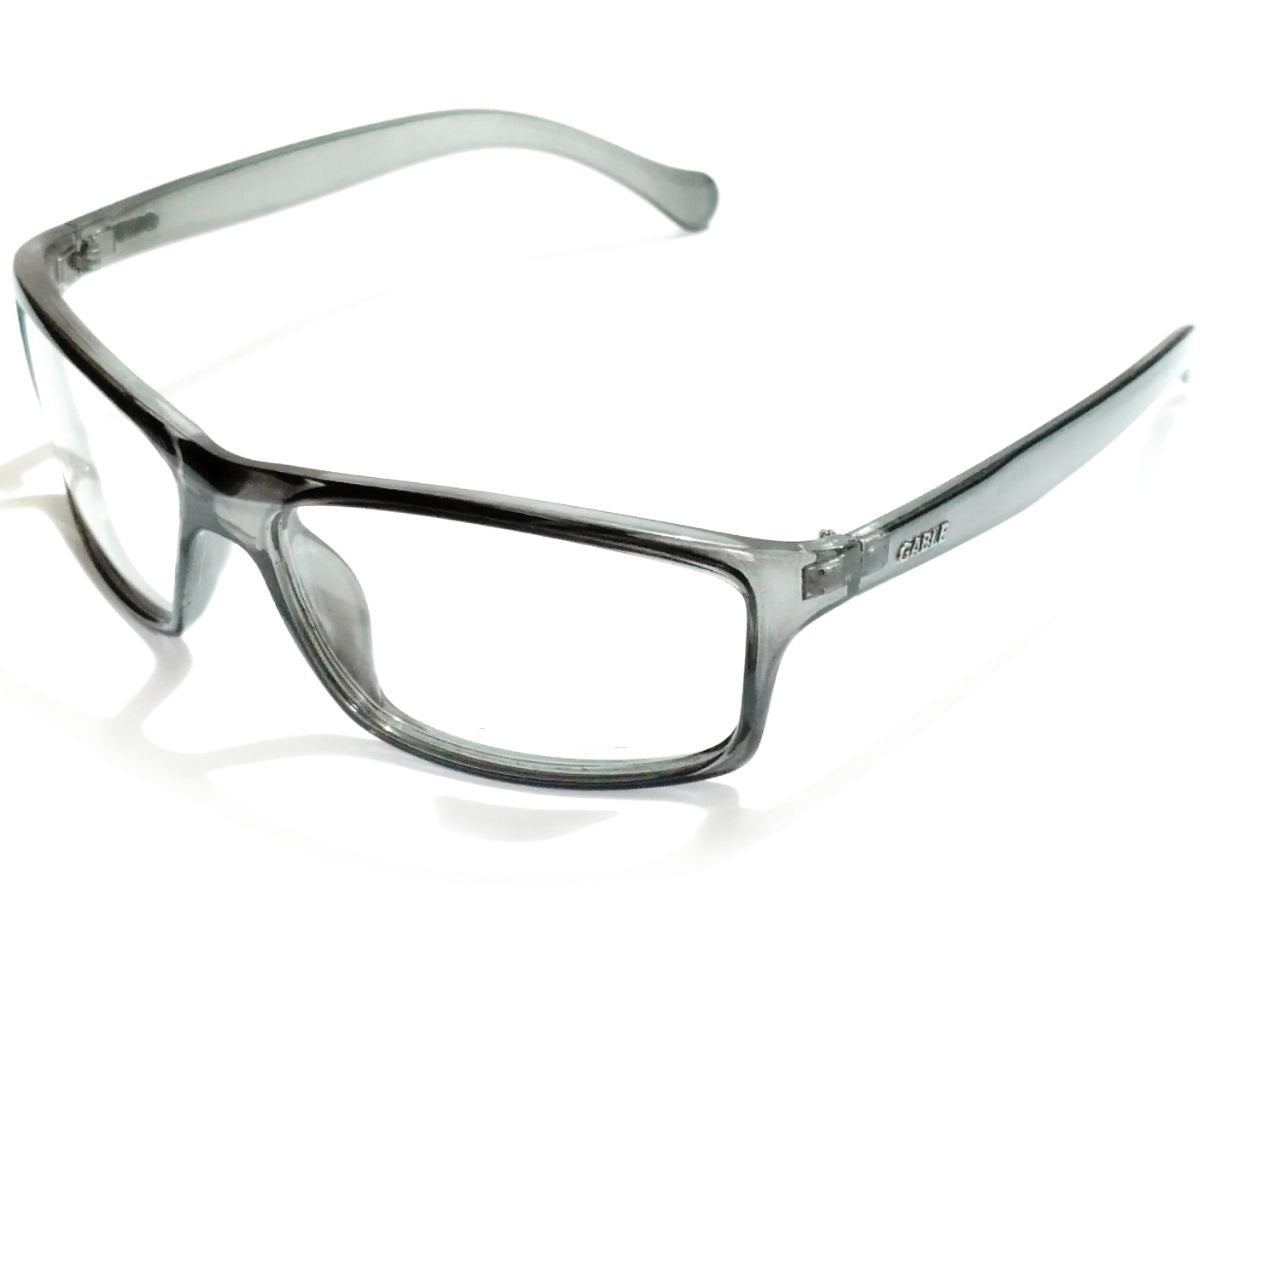 Grey Frame Wraparound Sports Cycling Photochromic Sunglasses